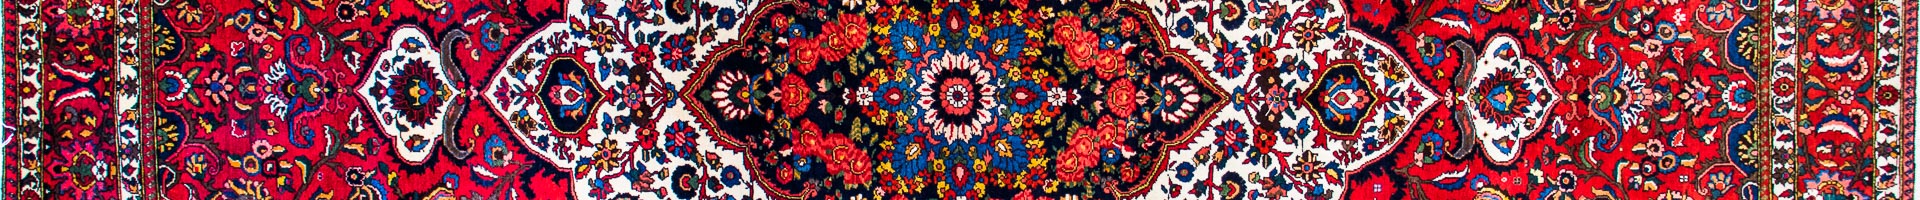 Bakhtiar Persian Carpet Rug N1Carpet Montreal Canada Tapis Persan